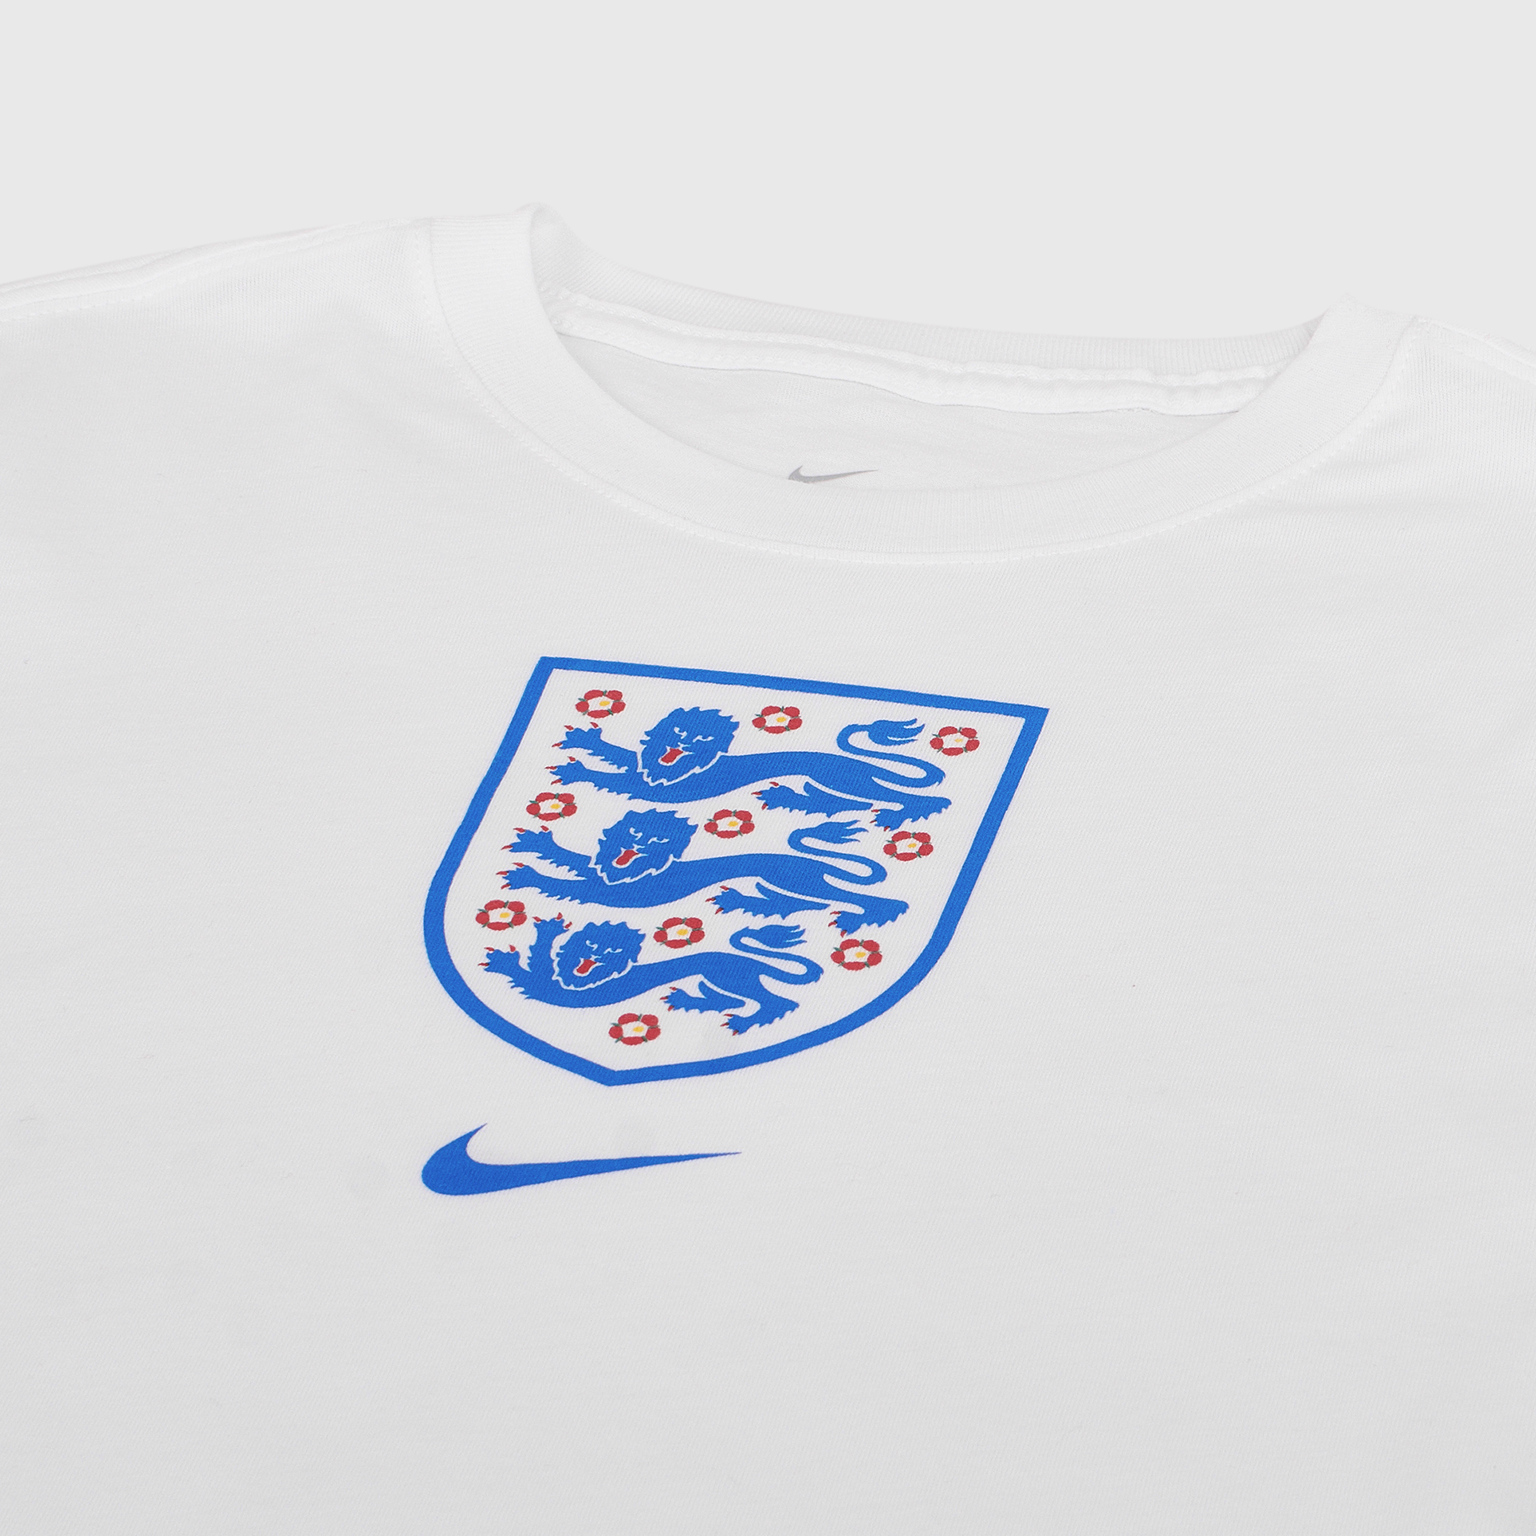 Футболка подростковая хлопковая Nike сборной Англии сезон 2020/21